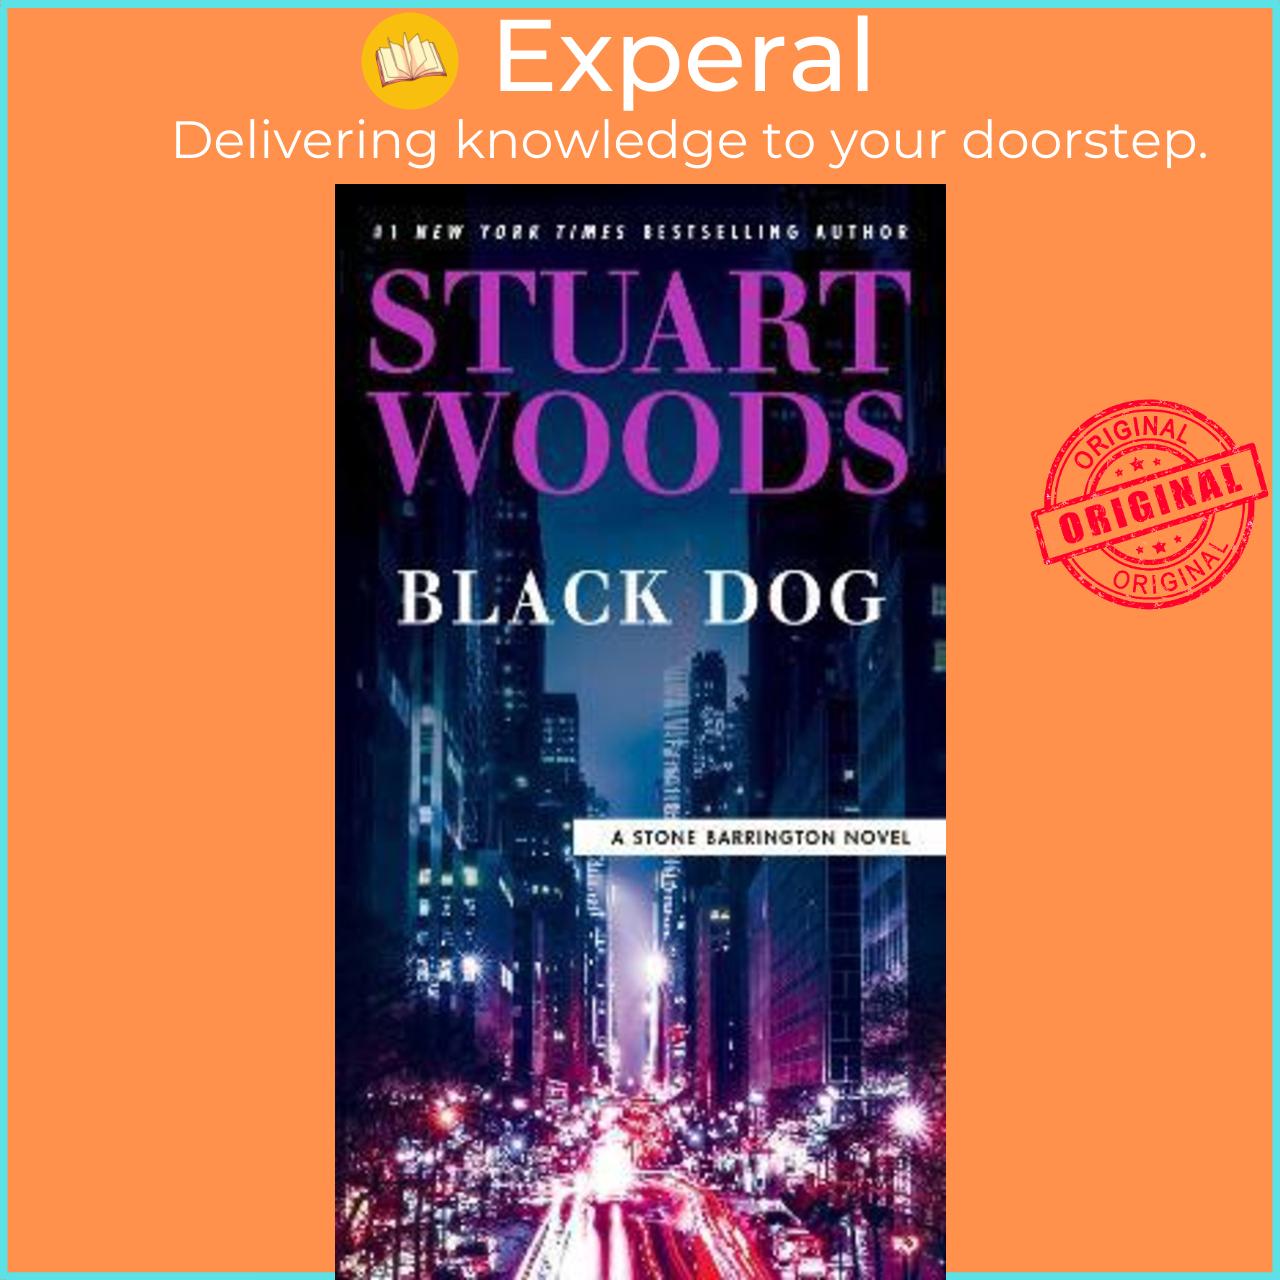 Sách - Black Dog by Stuart Woods (US edition, paperback)